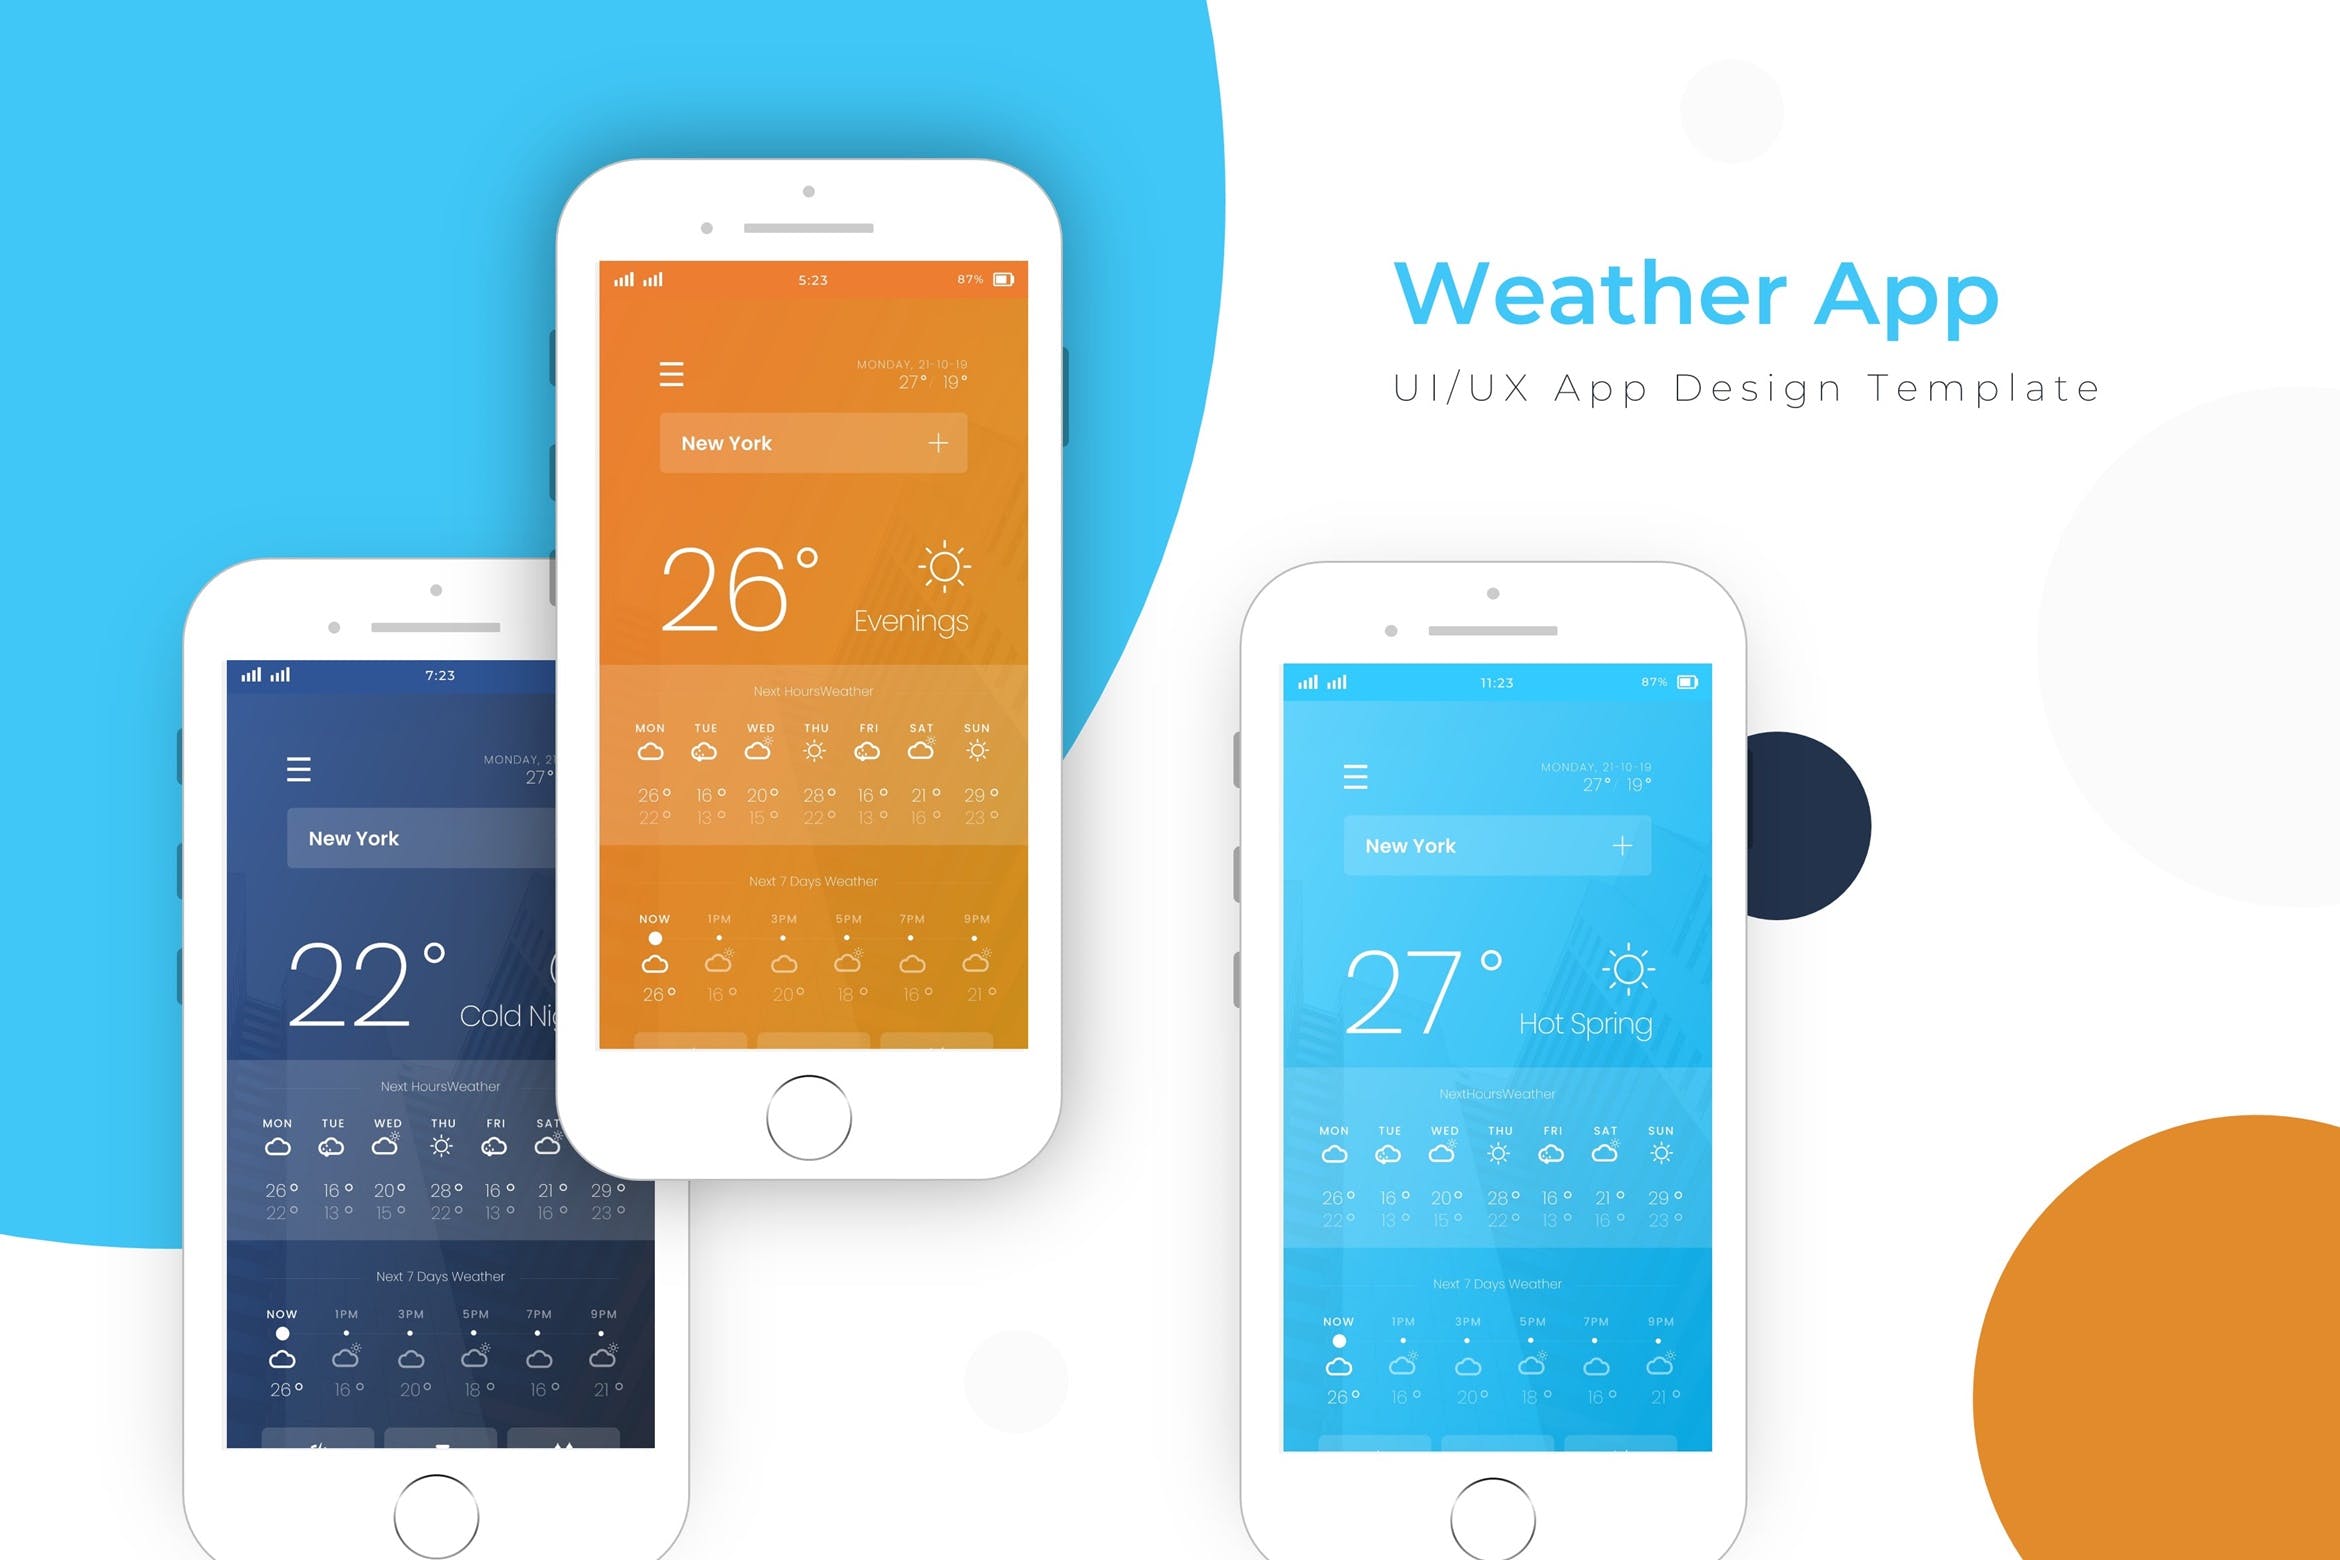 天气预报APP应用界面设计第一素材精选模板 Weather Template | App Design Template插图